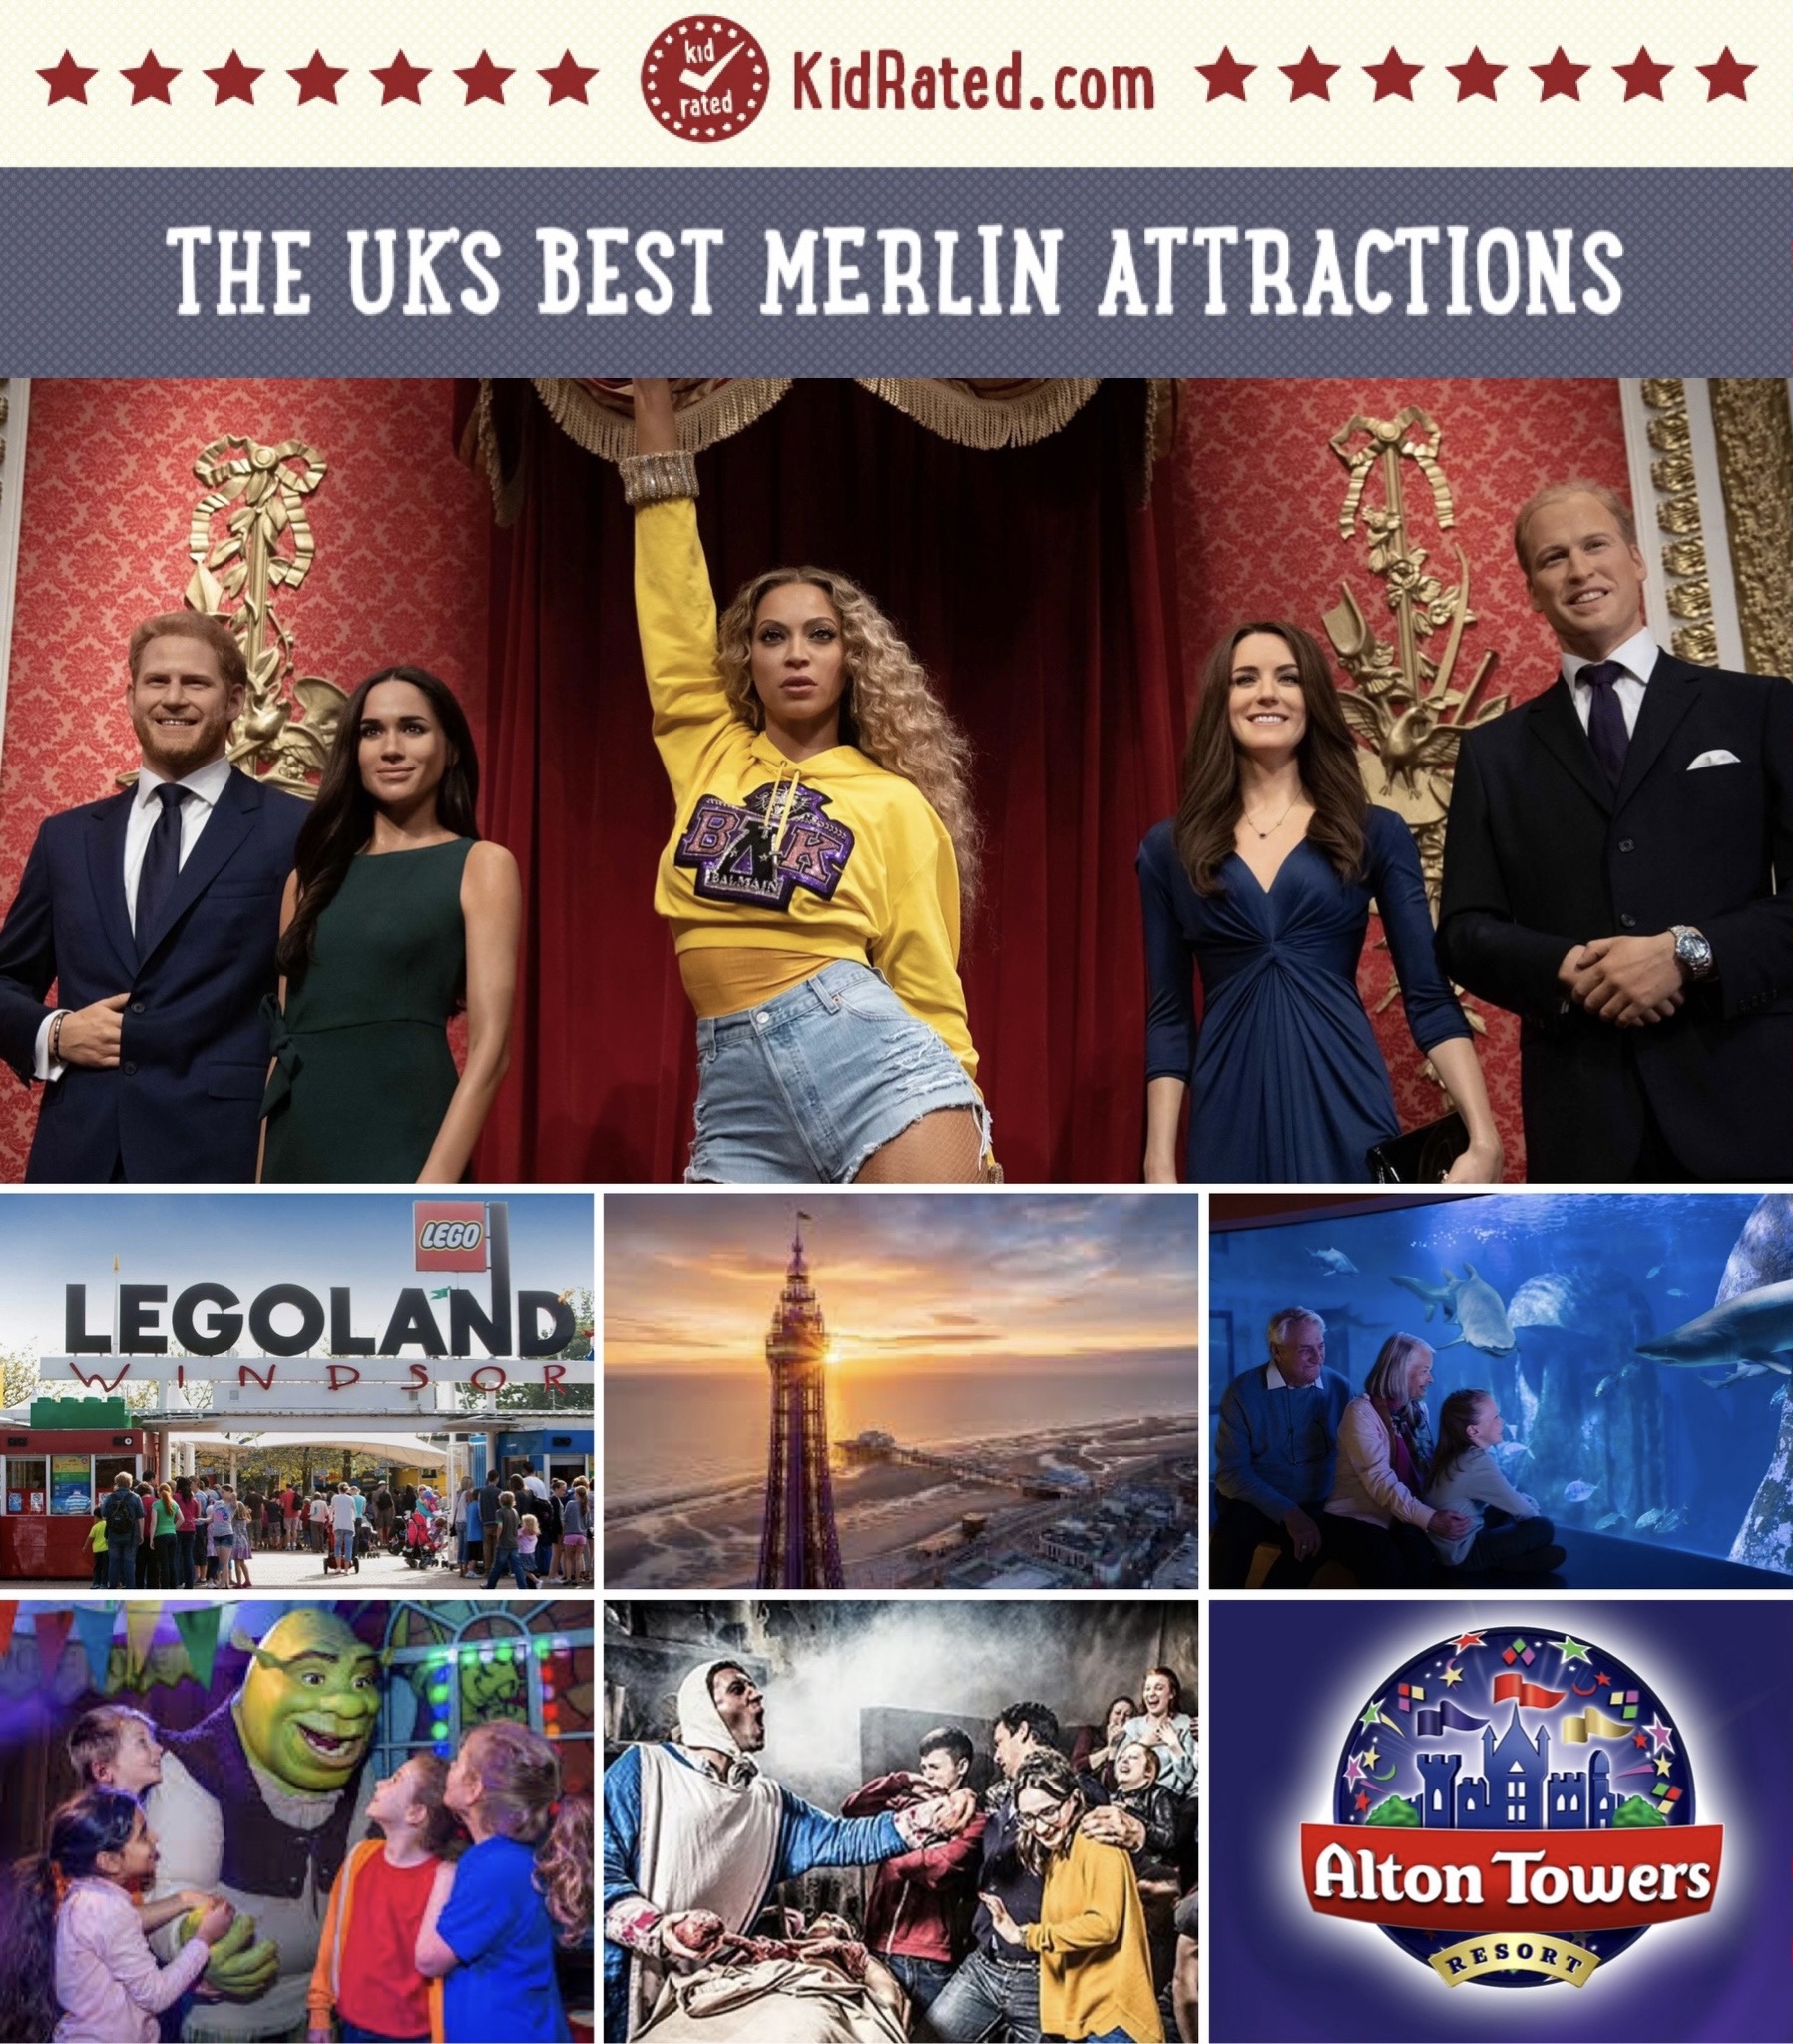 The UK's Best Merlin Attractions